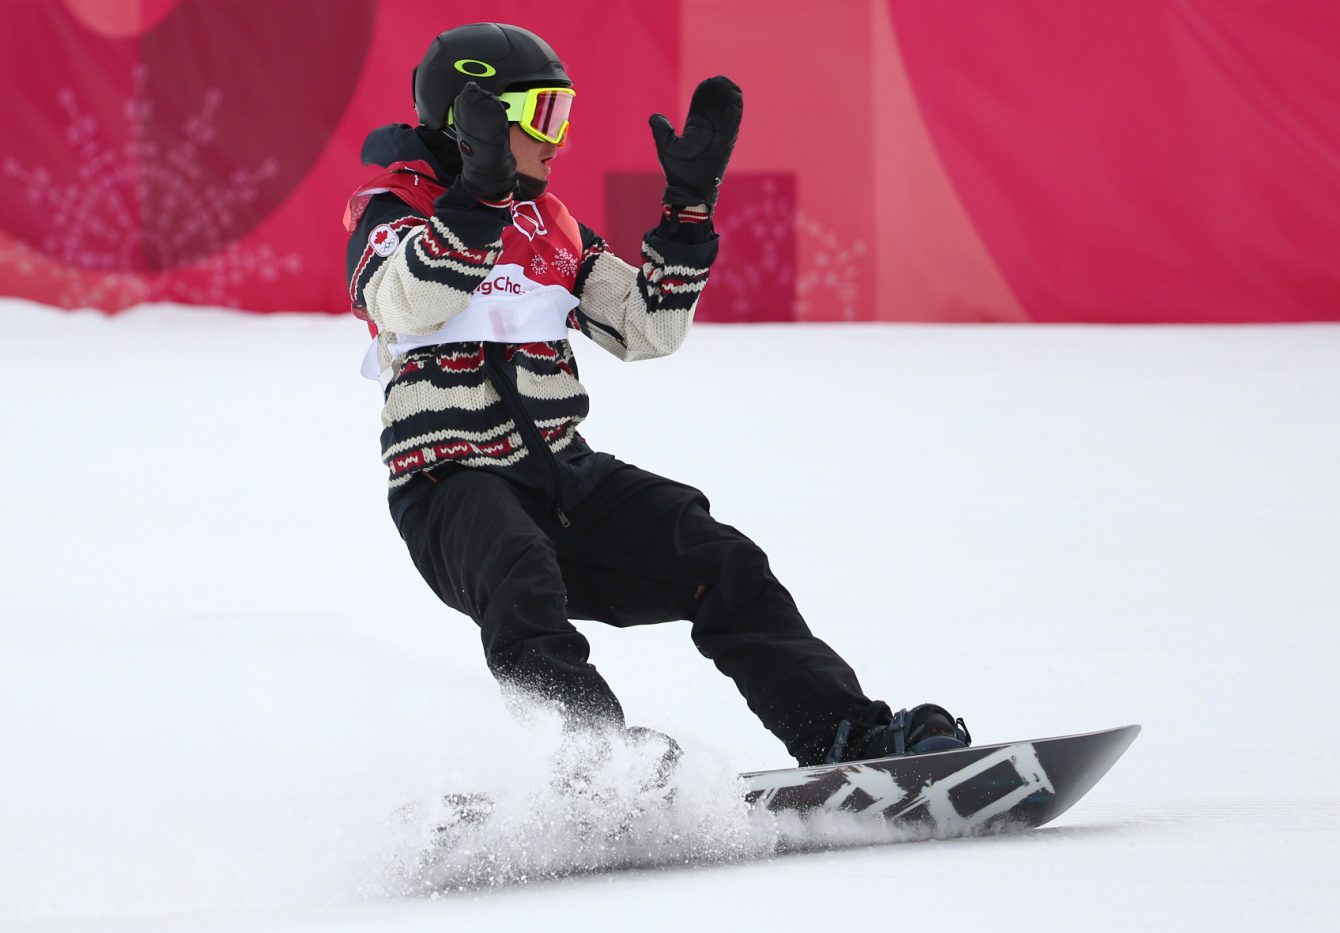 Le planchiste Sébastien Toutant d'Équipe Canada remporte la médaille d'or de l'épreuve big air des Jeux olympiques de PyeongChang, en Corée du Sud, le 24 février 2018. (Photo : Vaughn Ridley/COC)